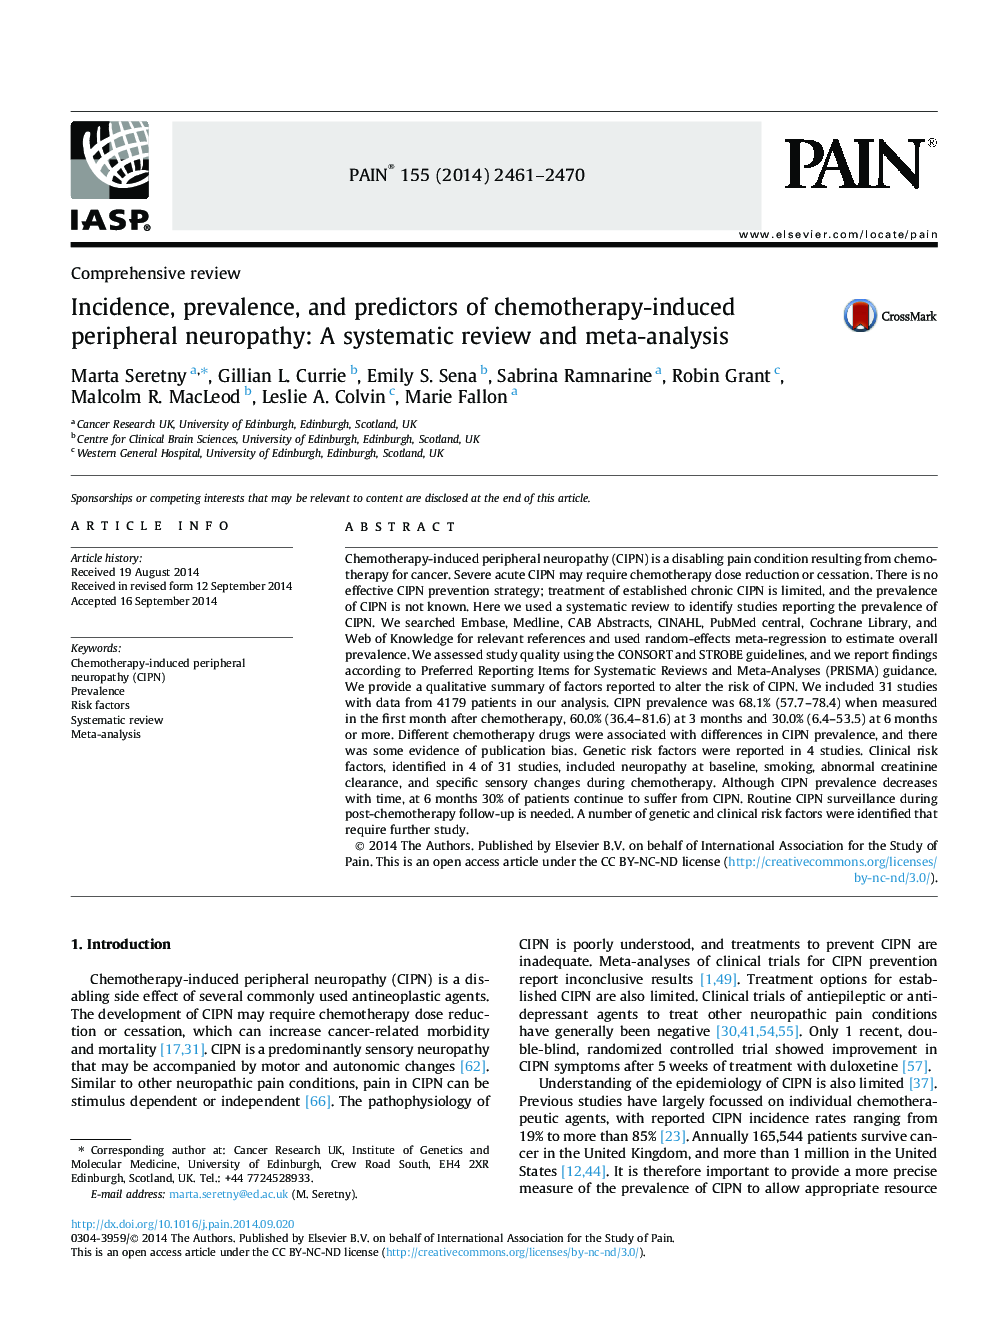 شیوع، شیوع و پیش بینی کننده نوروپاتی محیطی ناشی از شیمی درمانی: بررسی منظم و متاآنالیز 